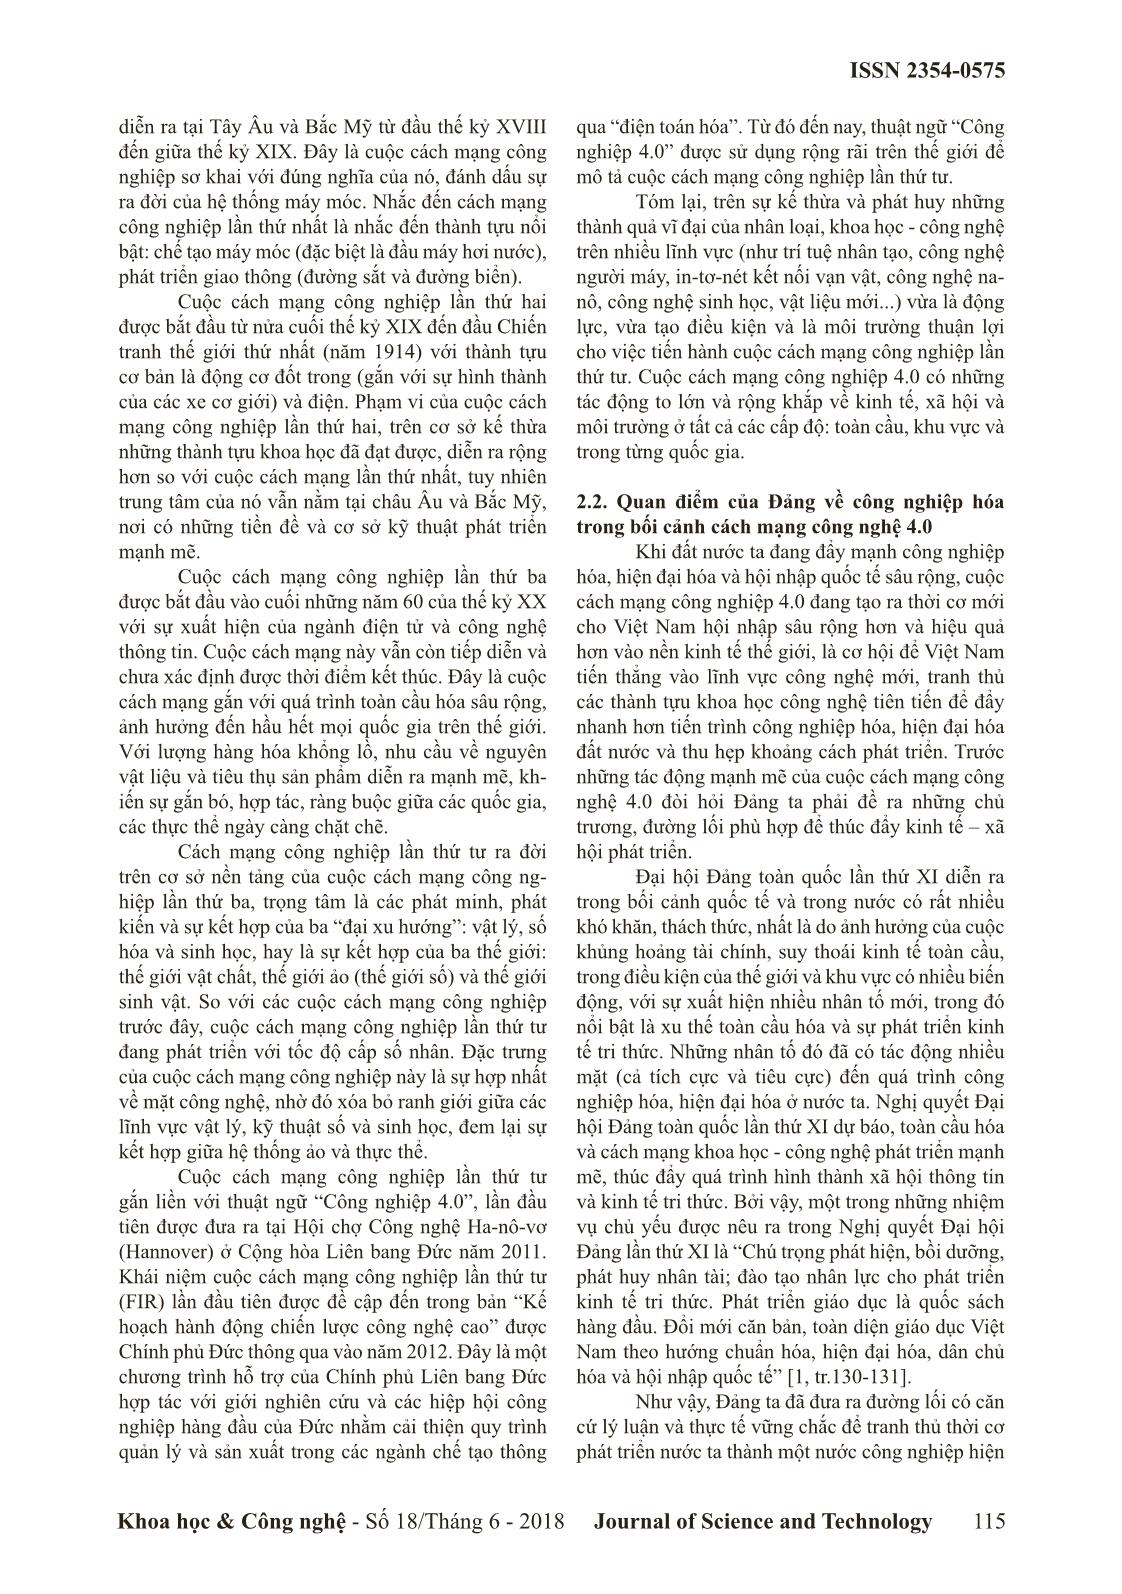 Đảng Cộng sản Việt Nam vận dụng tư tưởng Hồ Chí Minh về công nghiệp hóa trong bối cảnh cách mạng công nghệ 4.0 trang 3